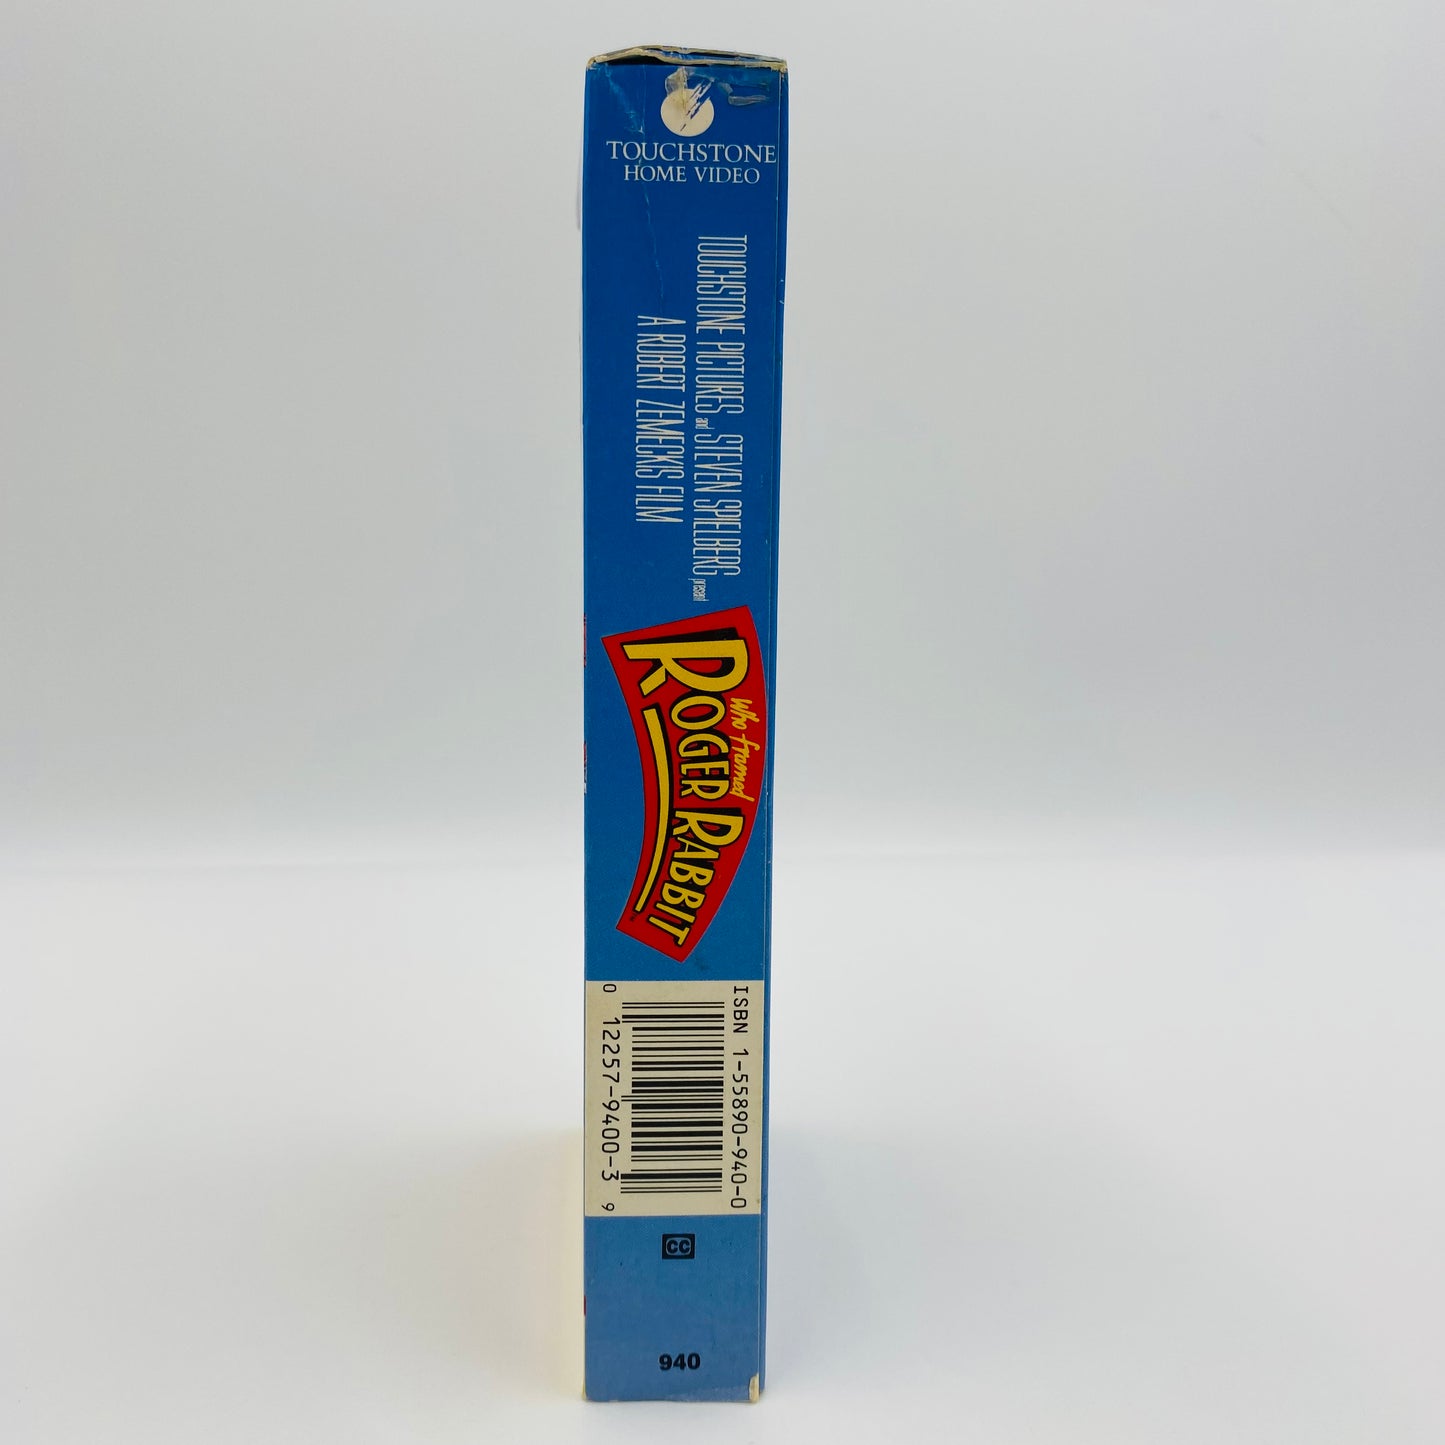 Who Framed Roger Rabbit VHS tape (1989) Touchstone Home Video